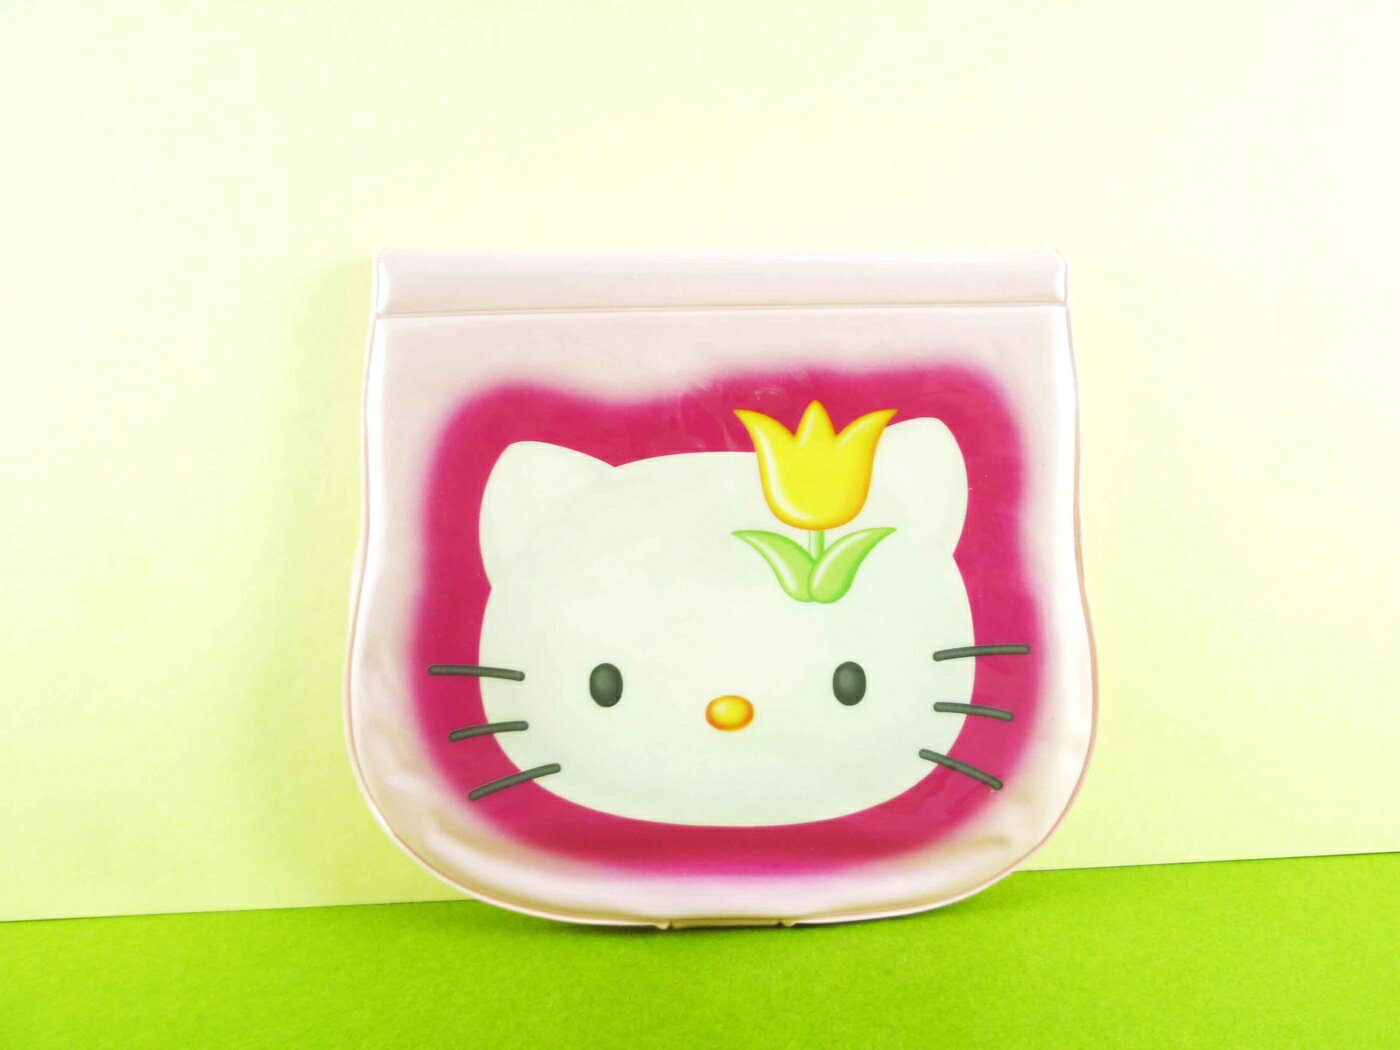 【震撼精品百貨】Hello Kitty 凱蒂貓 3*5相本 金香【共1款】 震撼日式精品百貨